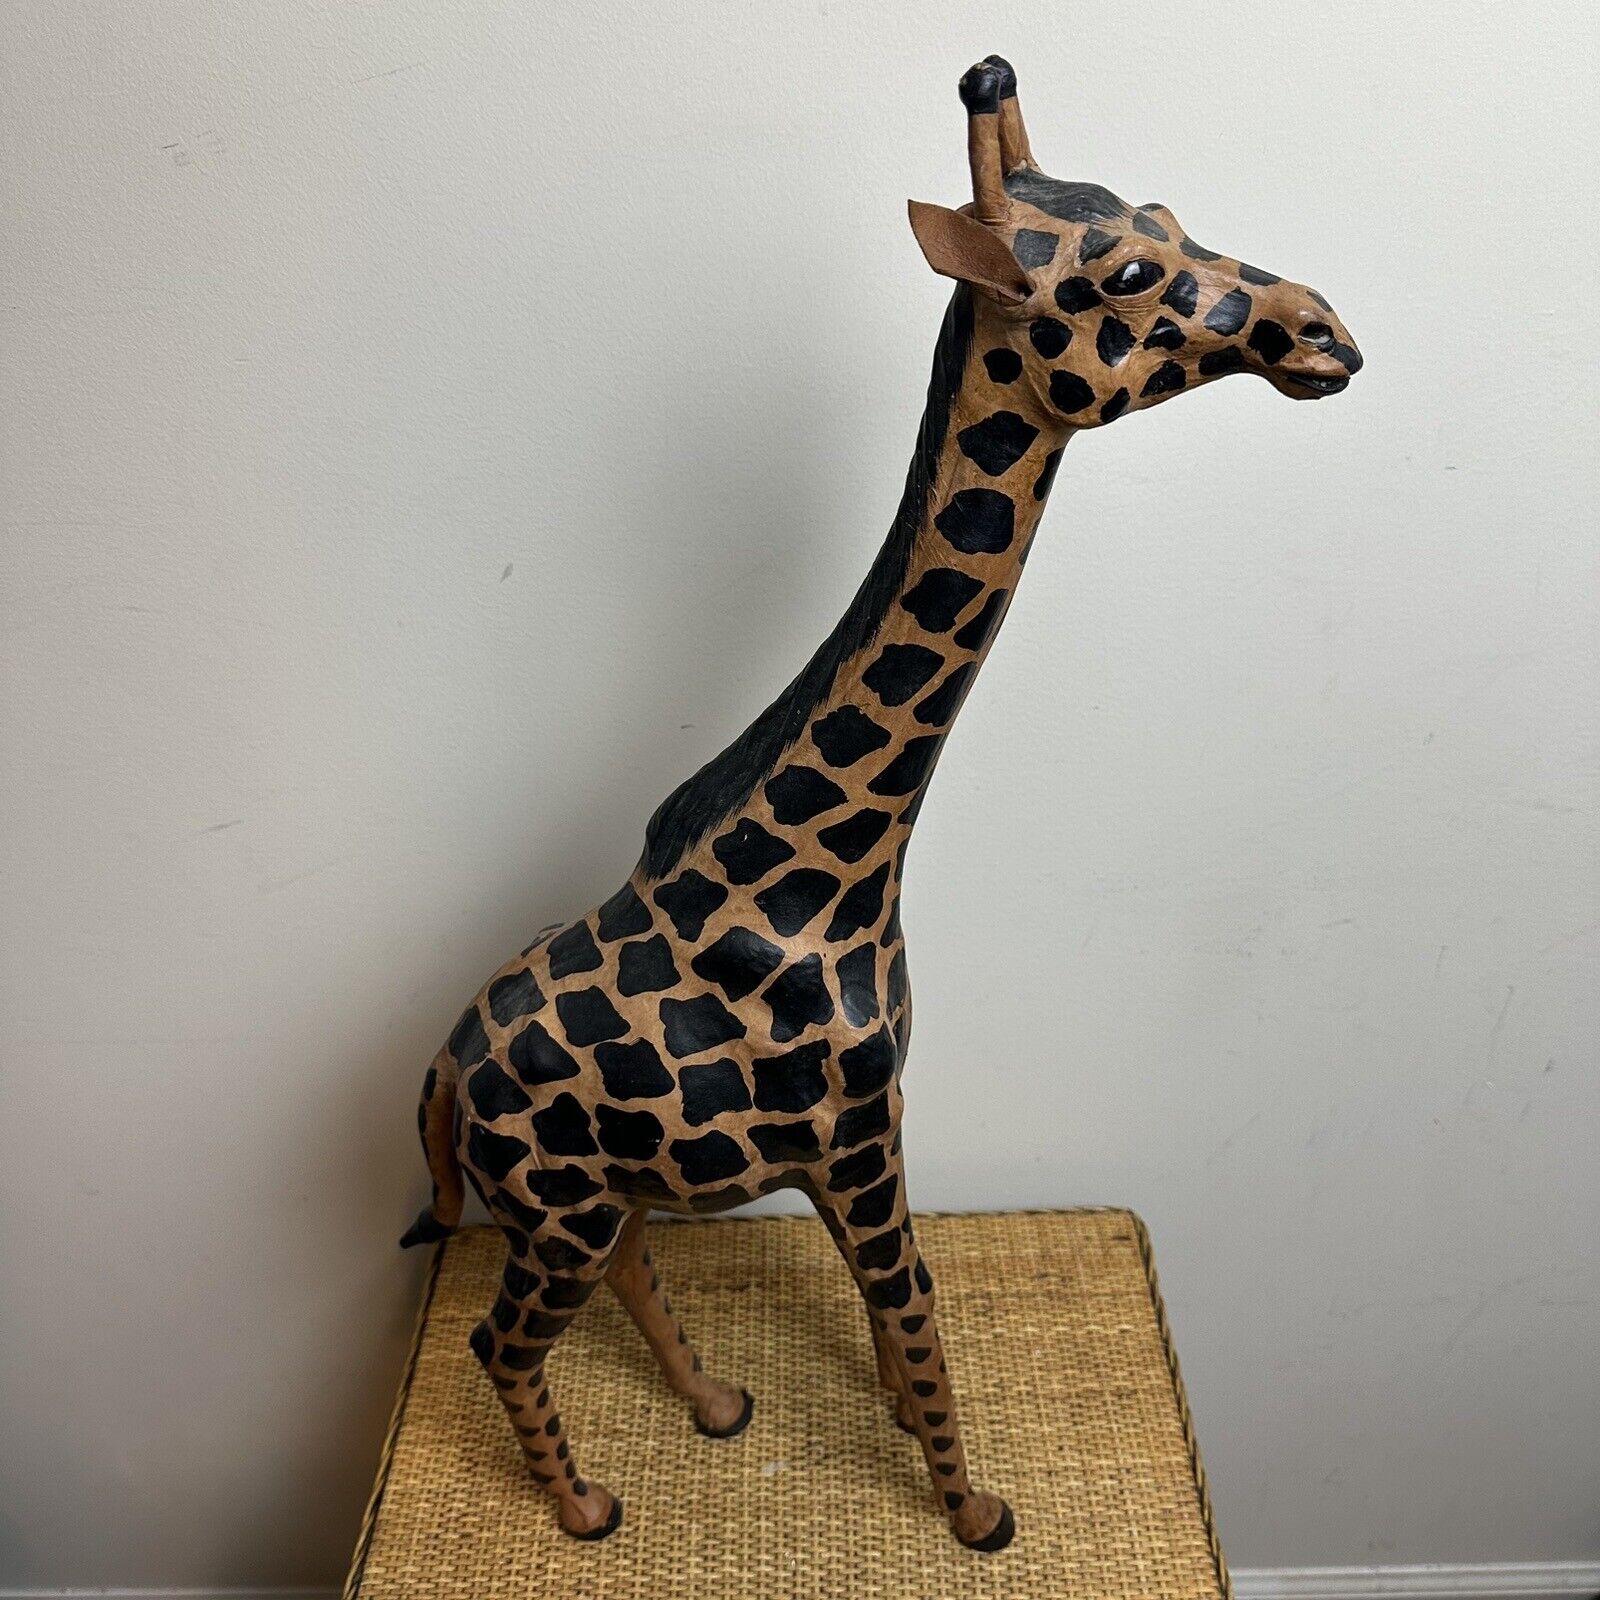 Vintage 1970s 26” Large Tooled Leather Giraffe Figure Animal Safari Africa Brown